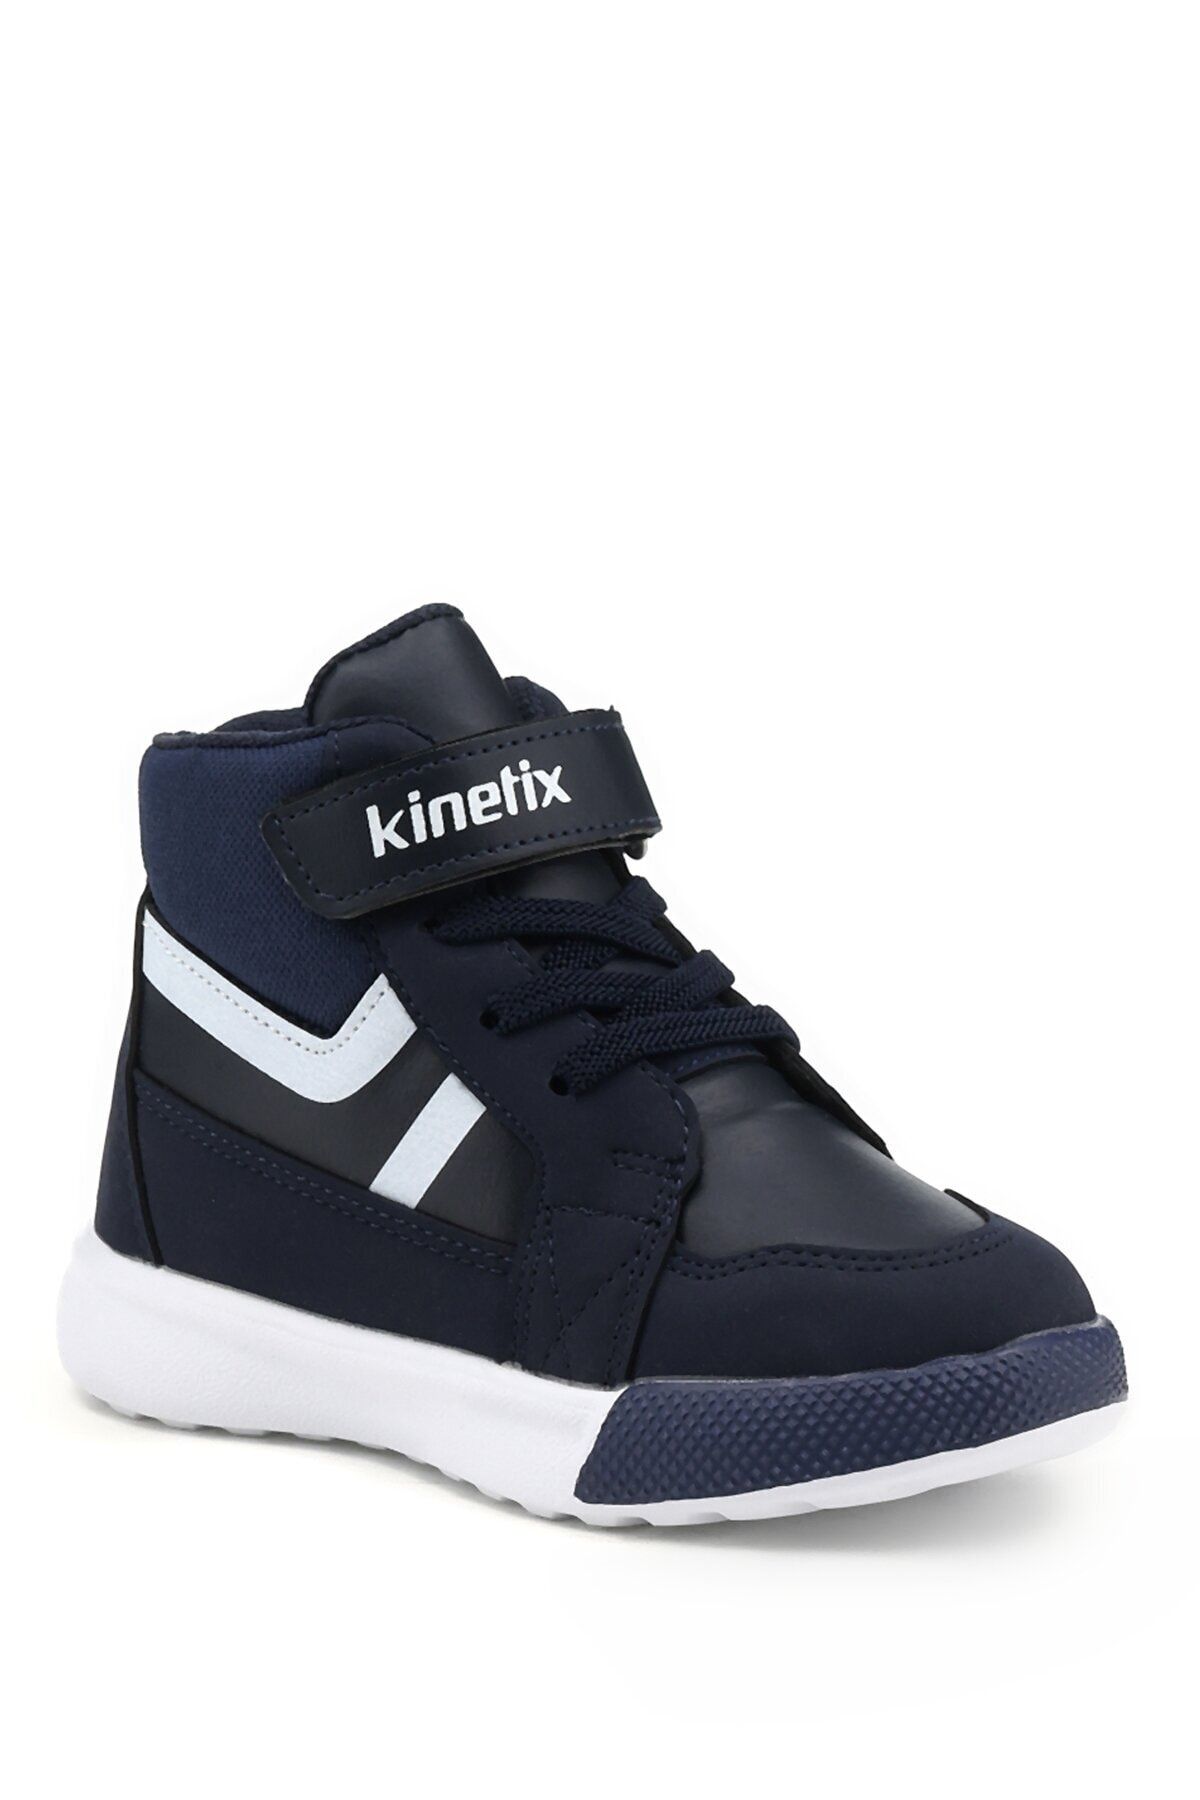 Kinetix Lesart 1pr Lacivert Erkek Çocuk Sneaker Ayakkabı